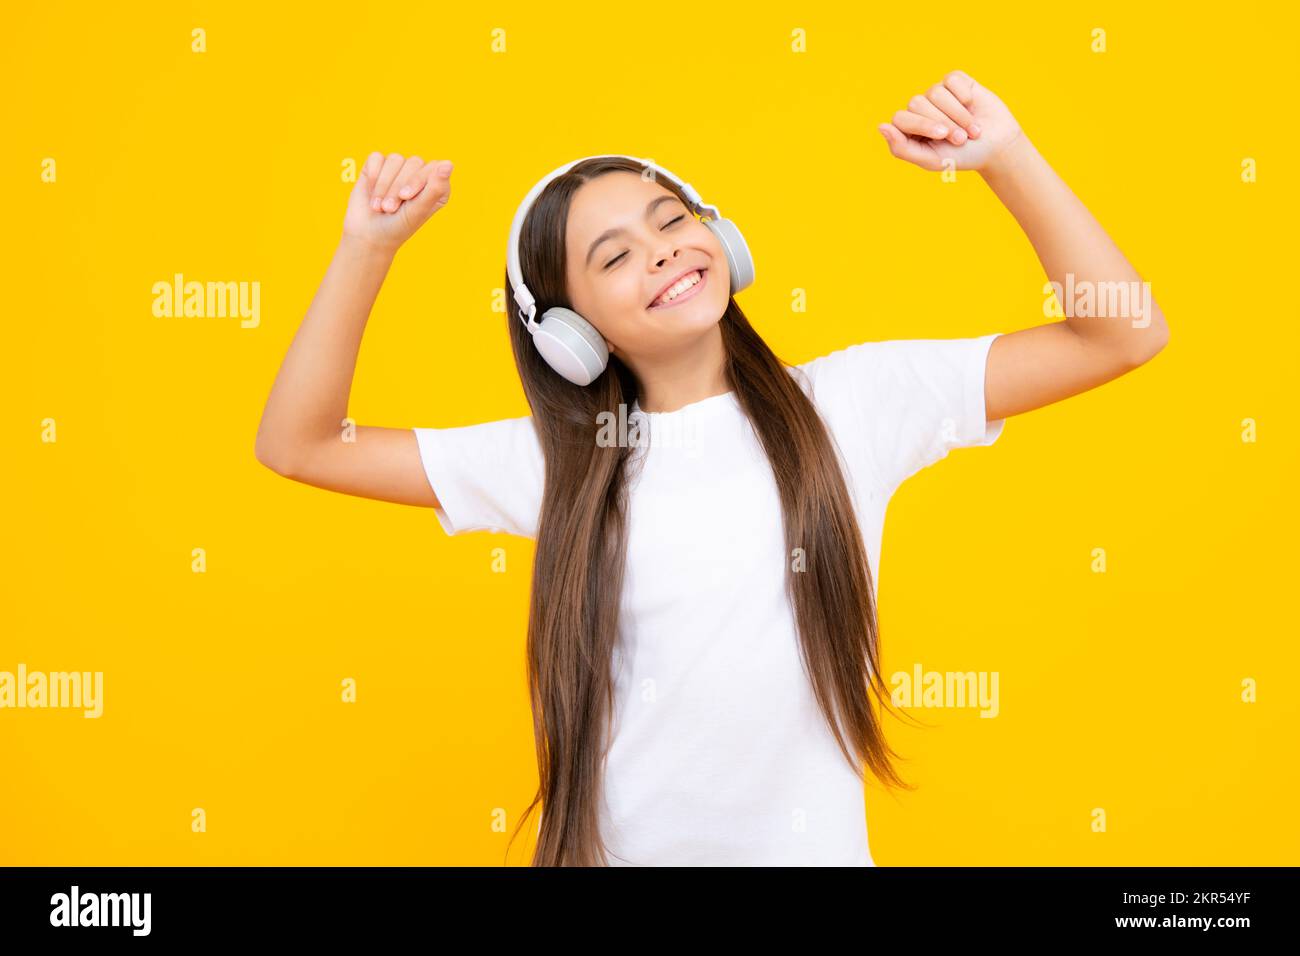 Teen girl in cuffie ascoltare musica. Dispositivo auricolare wireless. I bambini amano la musica in auricolari su sfondo giallo. Foto Stock